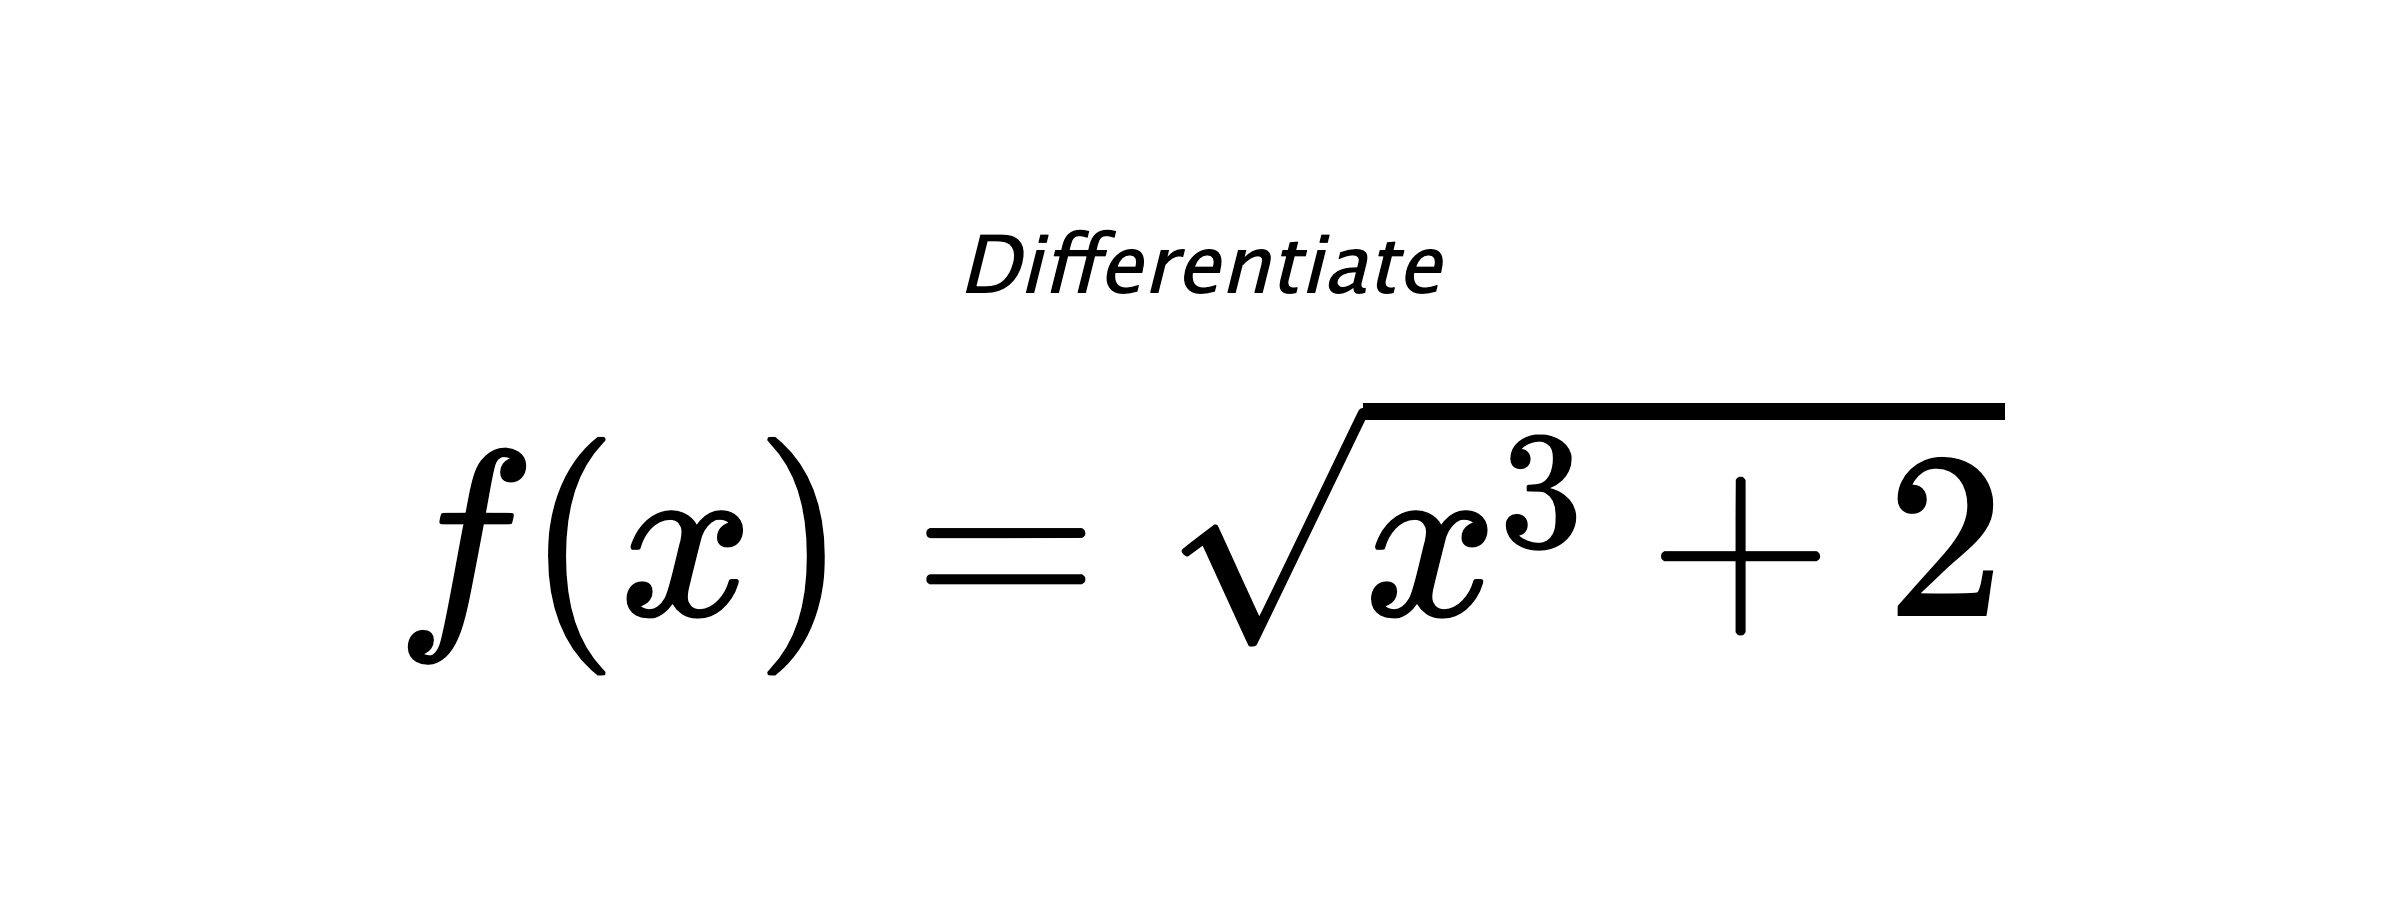 Differentiate $ f(x) = \sqrt{x^{3} + 2} $